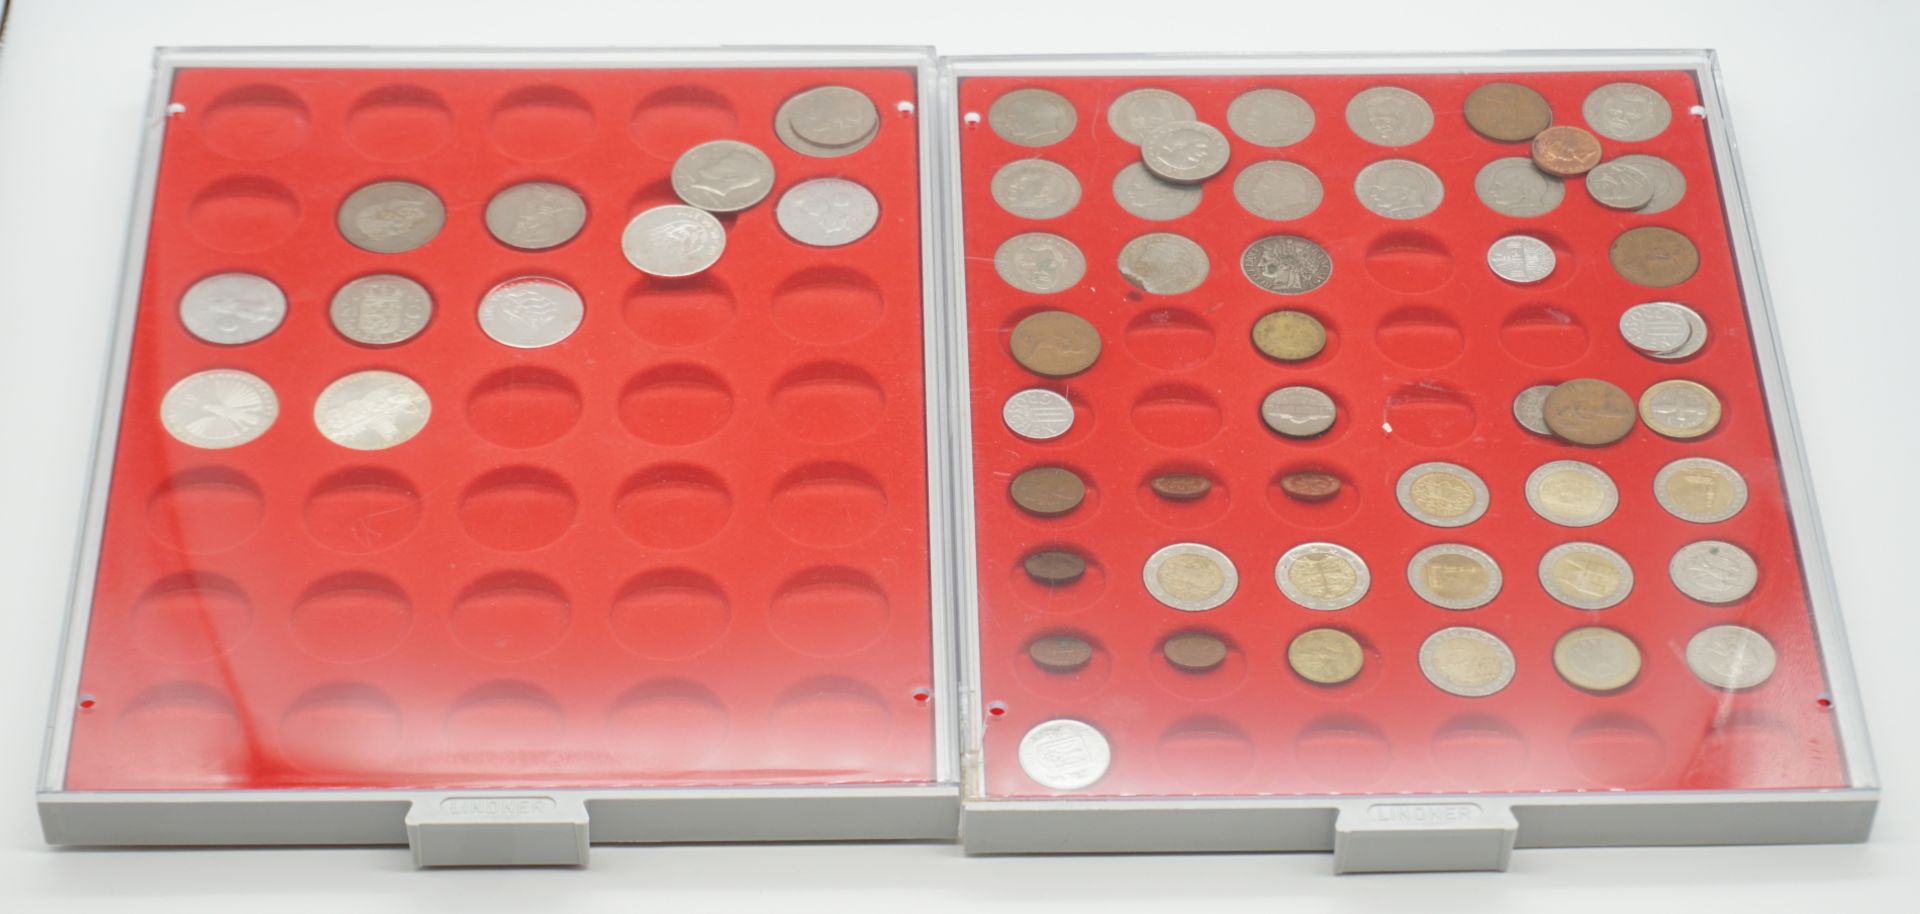 1 Konv. Münzen/Medaillen: Silber/Metall, BRD 5 DM, Kanada, Euros, Zahlgeld versch. Länder u.a., im K - Bild 3 aus 3